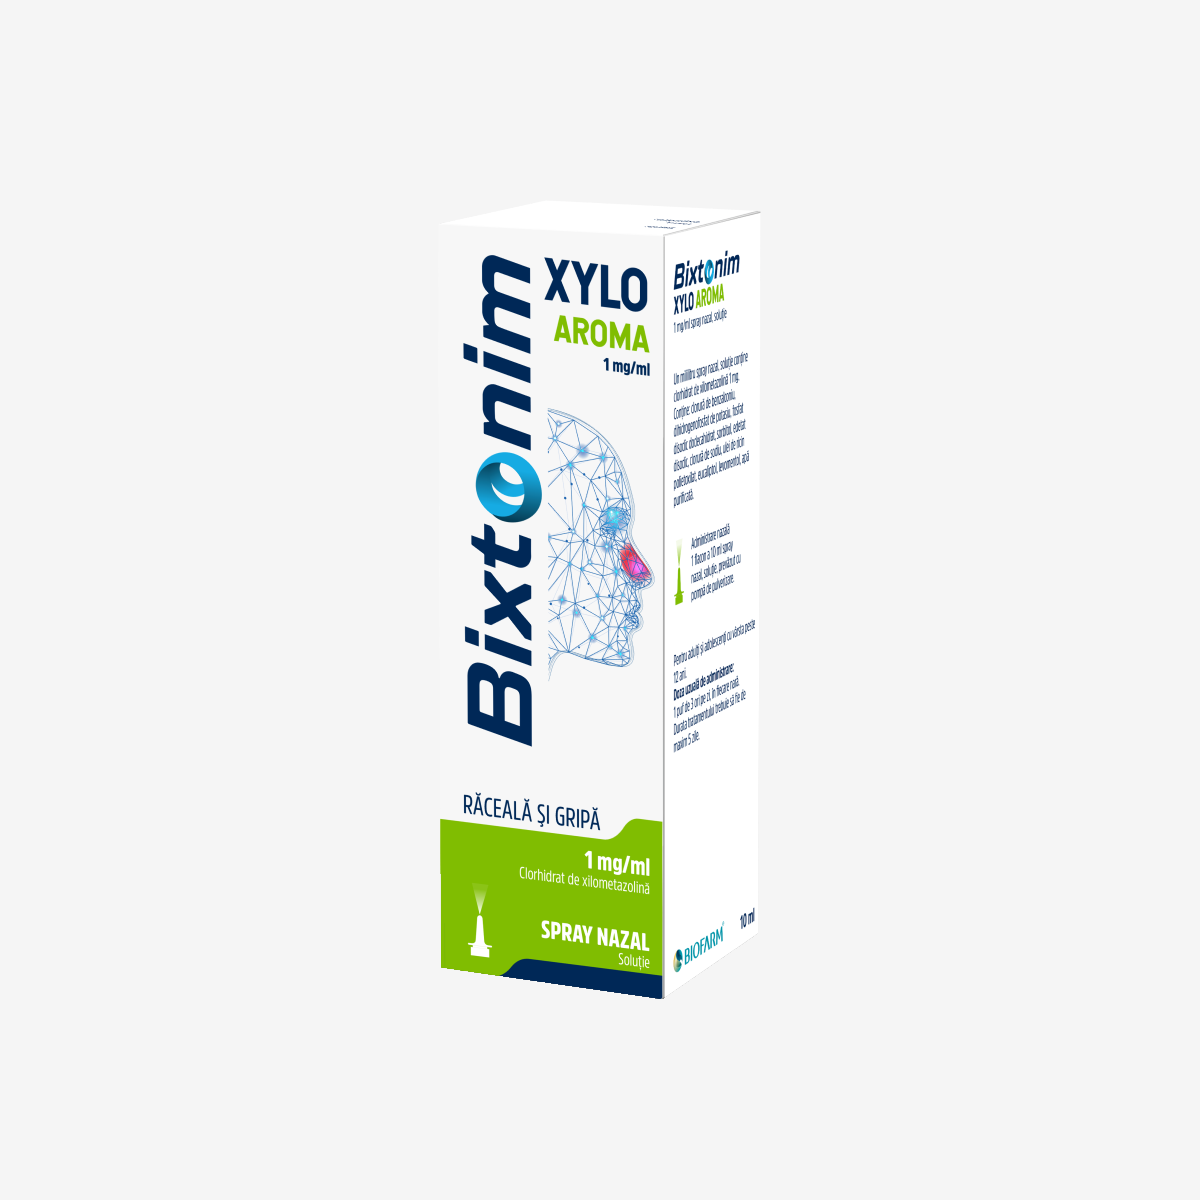 Bixtonim Xylo Aroma spray nazal, 1 mg/ml, 10 ml, Biofarm